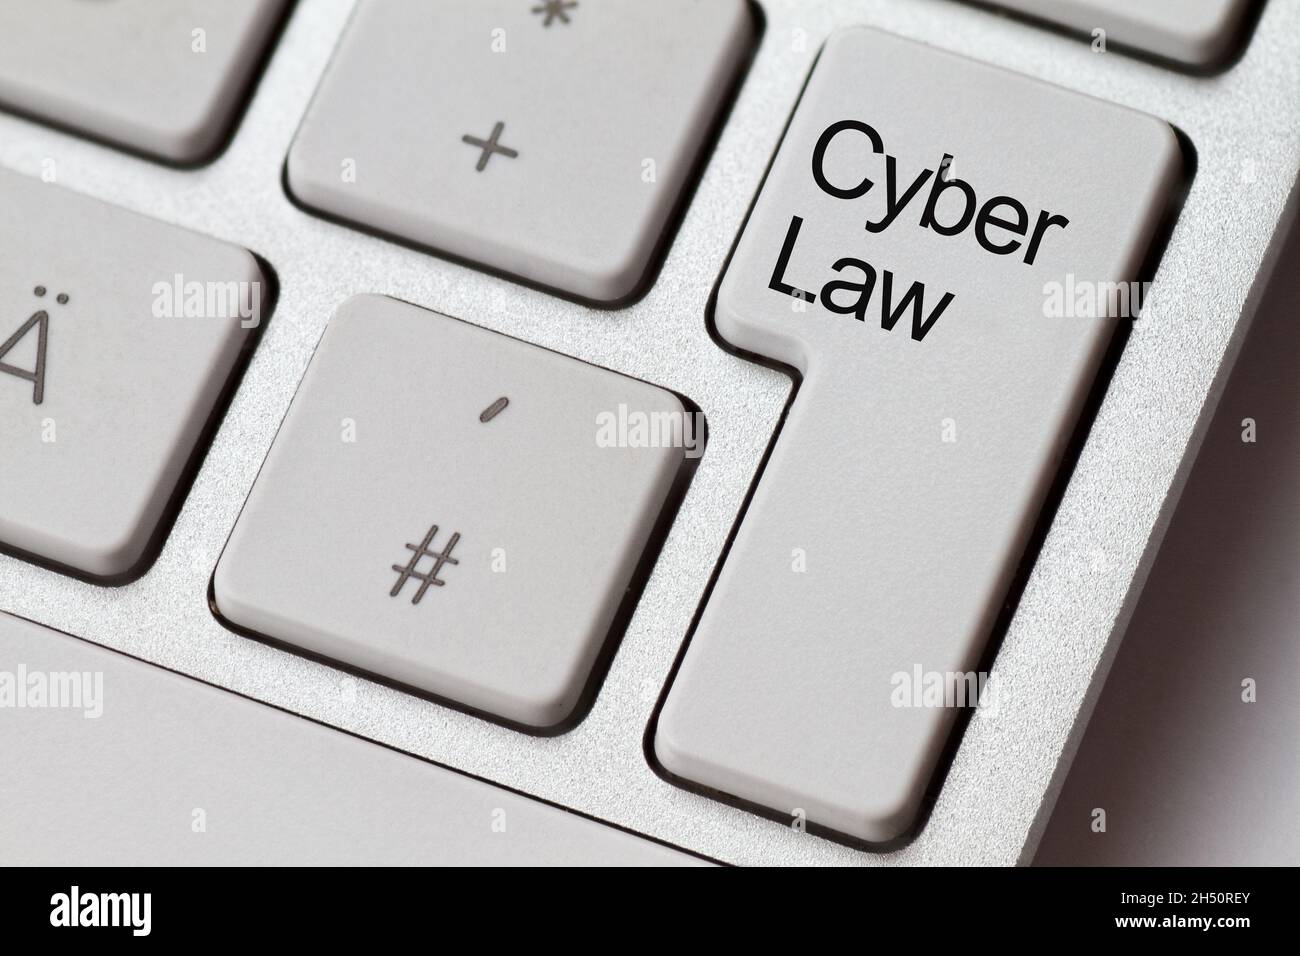 Cyber Law befindet sich auf der ENTER-Taste einer hellen Computertastatur Stockfoto